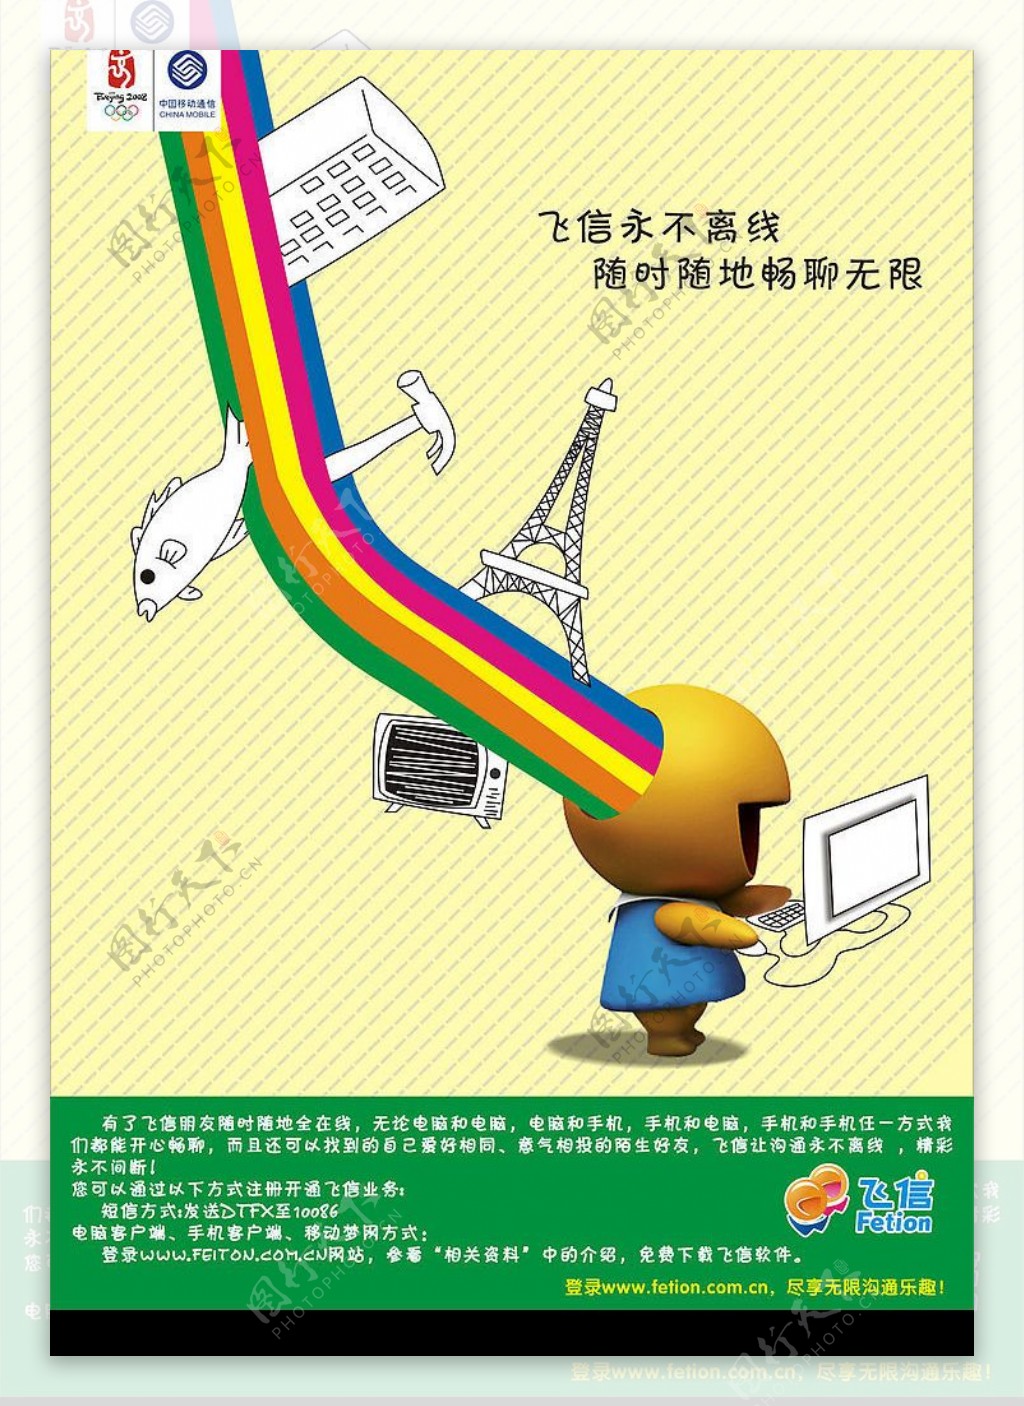 中国移动飞信业务图片